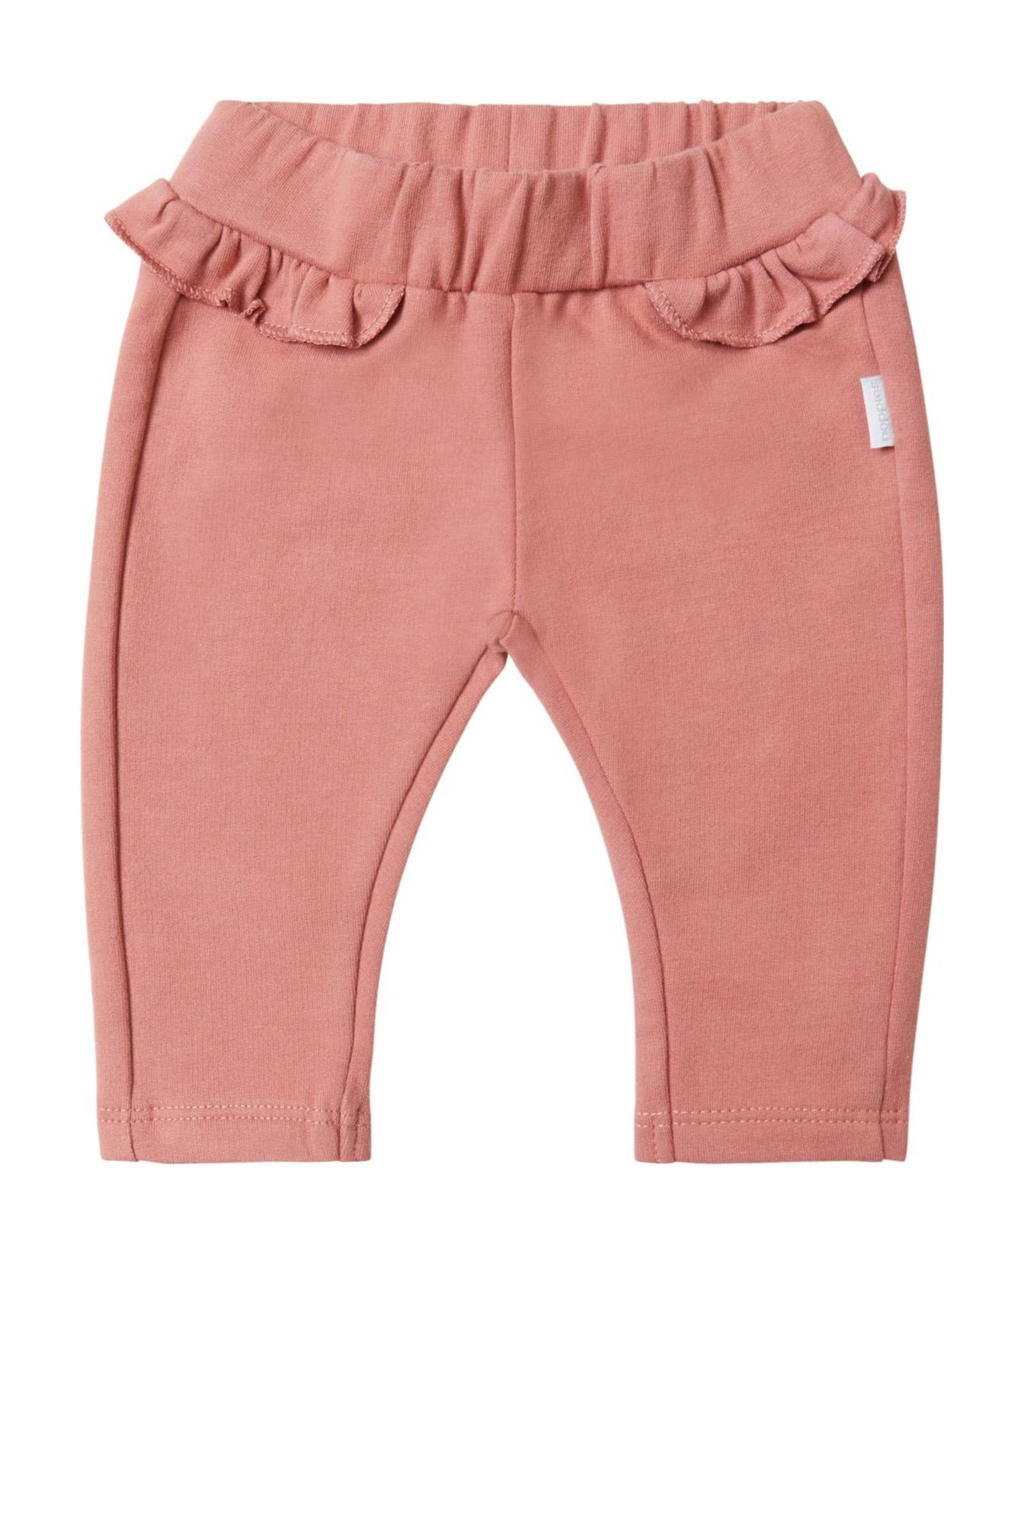 Roze meisjes Noppies baby regular fit broek Cambridge van stretchkatoen met elastische tailleband